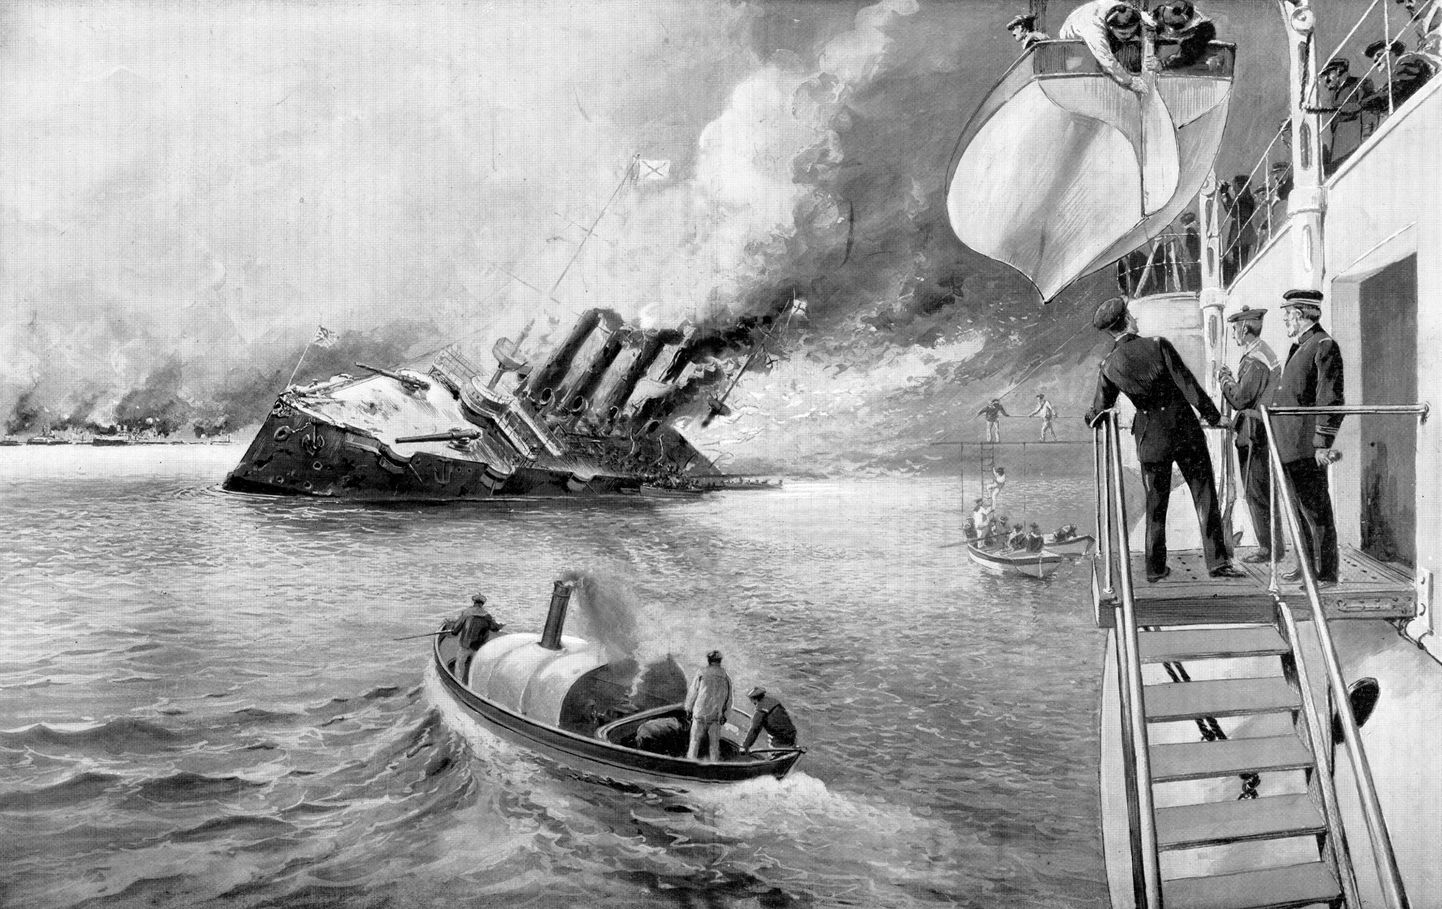 Vene kruiisilaeva uputamine 9. veebruaril artiklis mainitud «Tshempulos» 1904. aasta veebruaris.